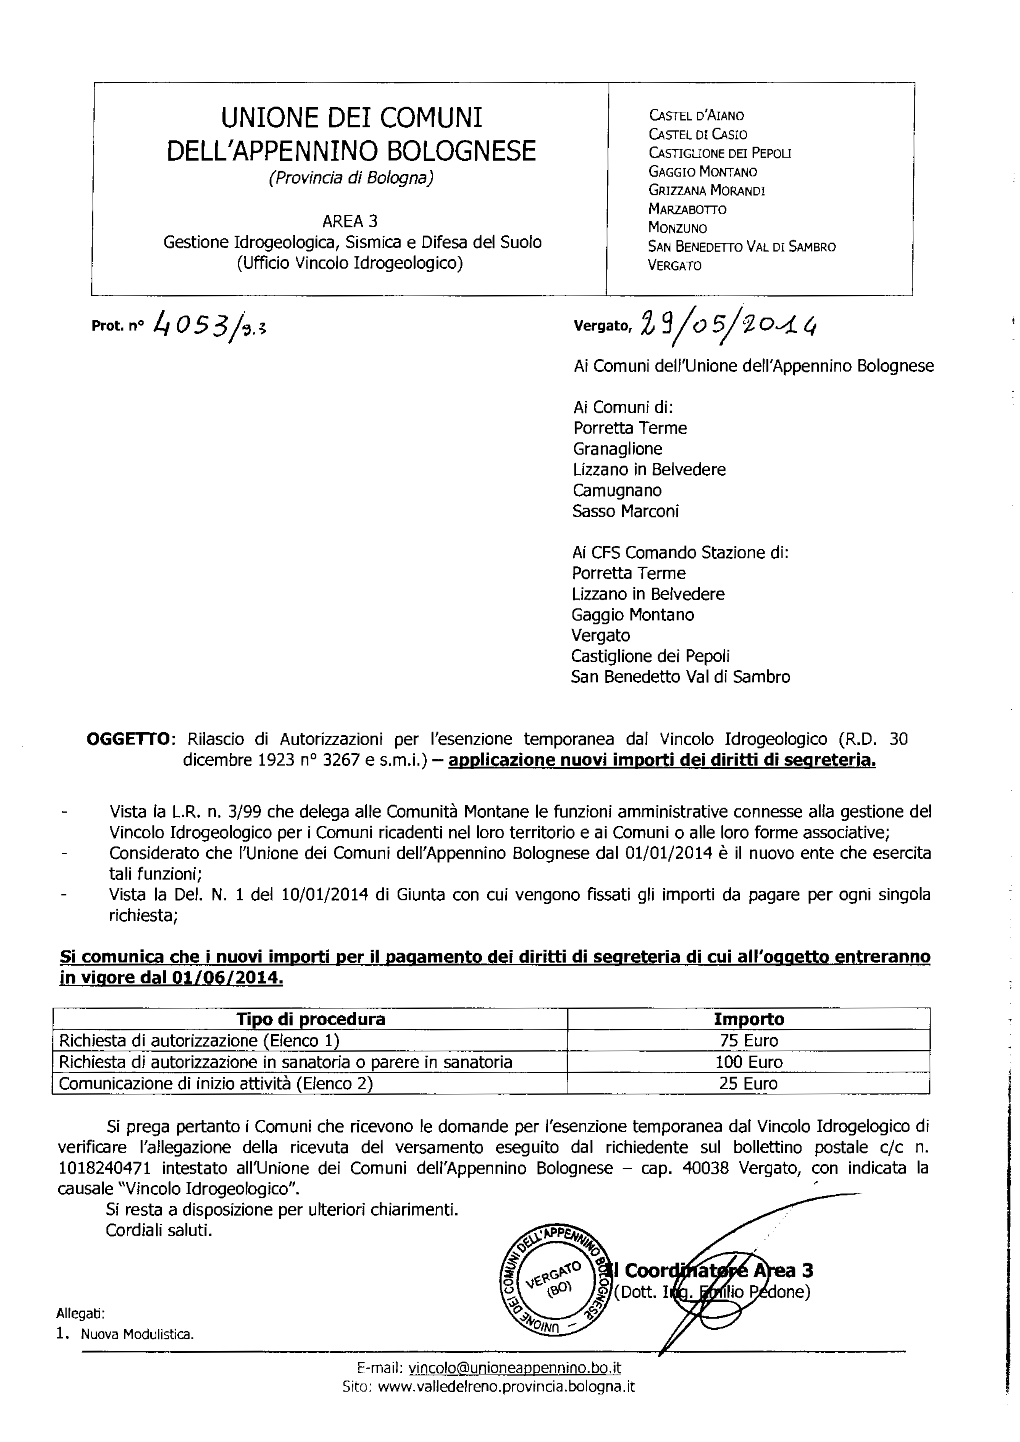 Unione Dei Comuni Dell'appennino Bolognese Dal 01/01/2014 È Il Nuovo Ente Che Esercita Tali Funzioni; Vista La Del